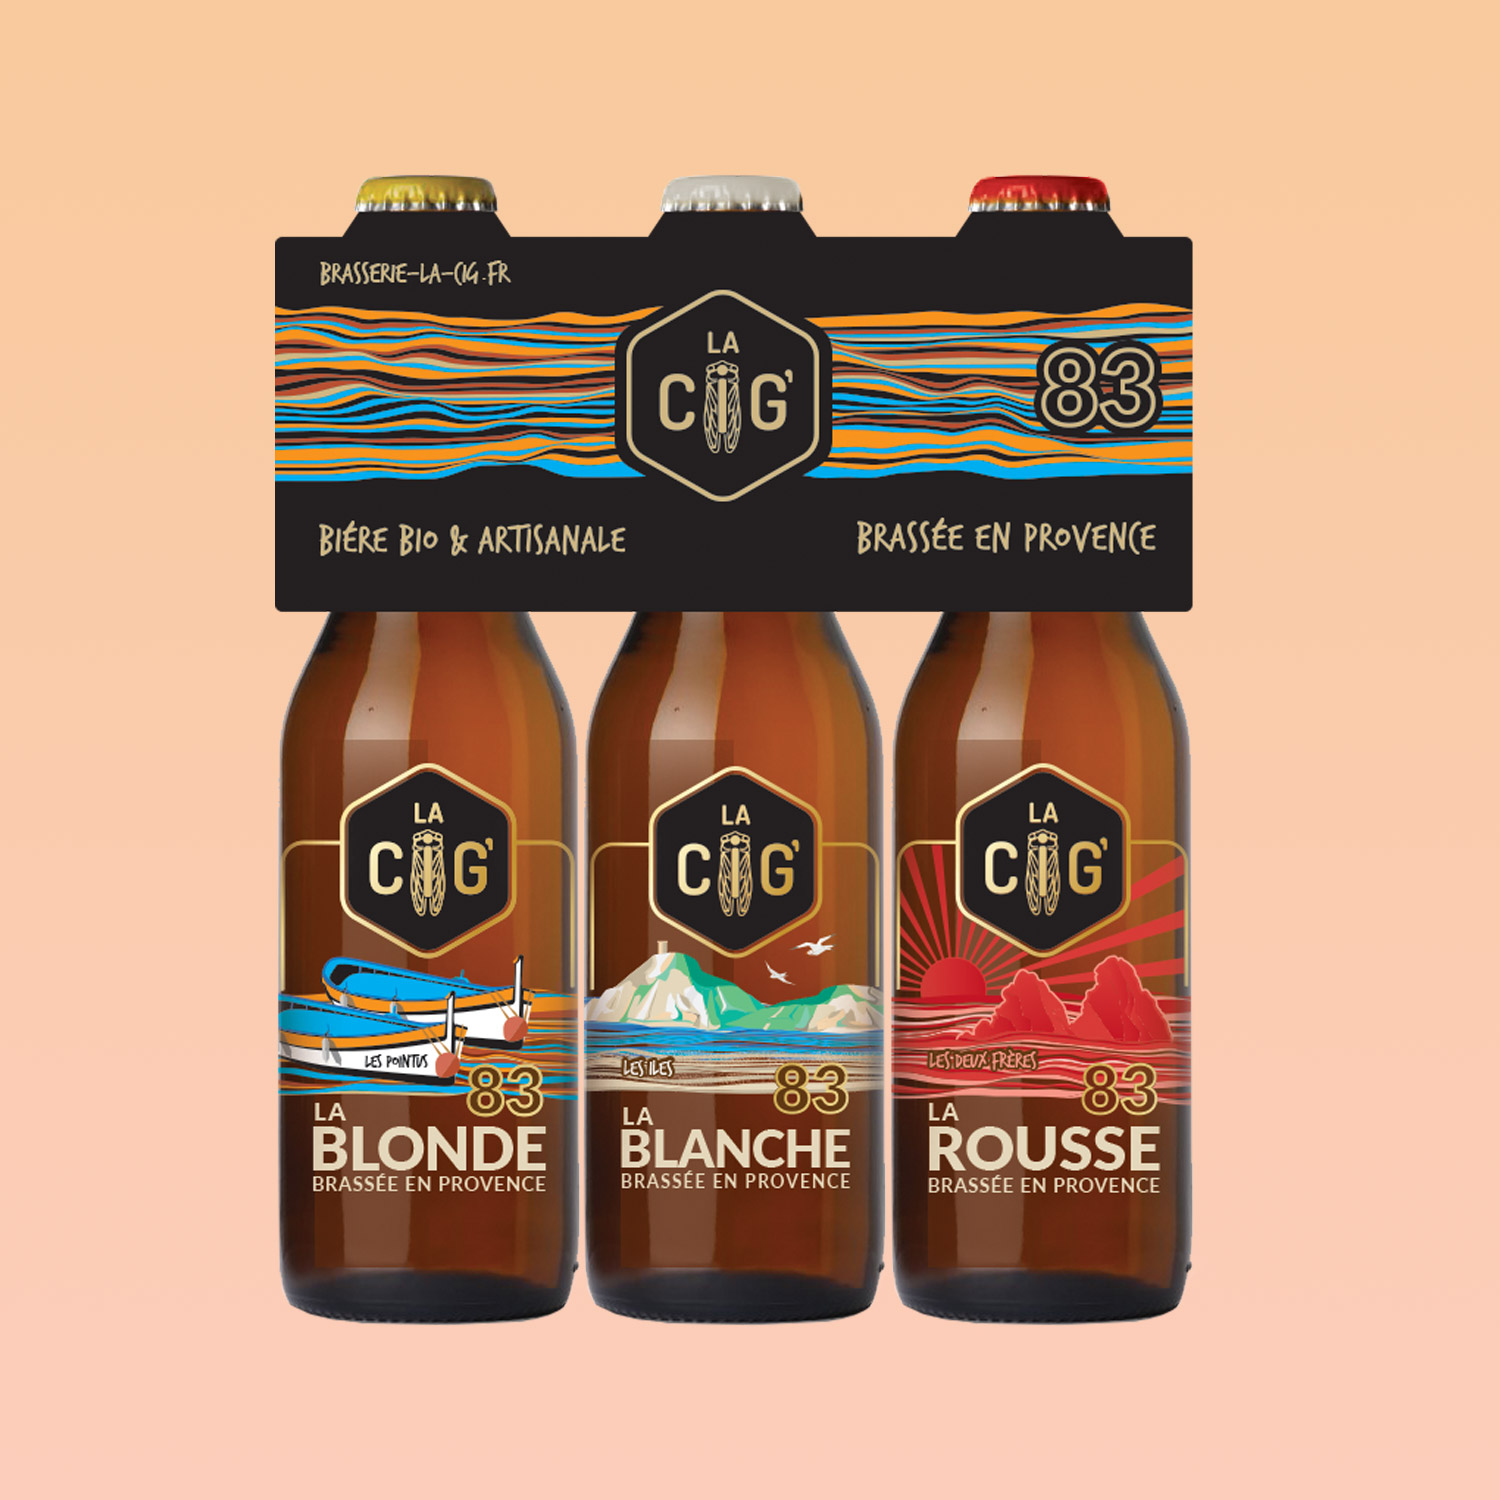 trois bouteilles de bières avec des étiquettes transparentes pour la brasserie La Cig, située à la Seyne-sur-Mer dans le Var, les trois bouteilles sont mises dans un packaging noir avec le logo crées par Yunaima Oyola